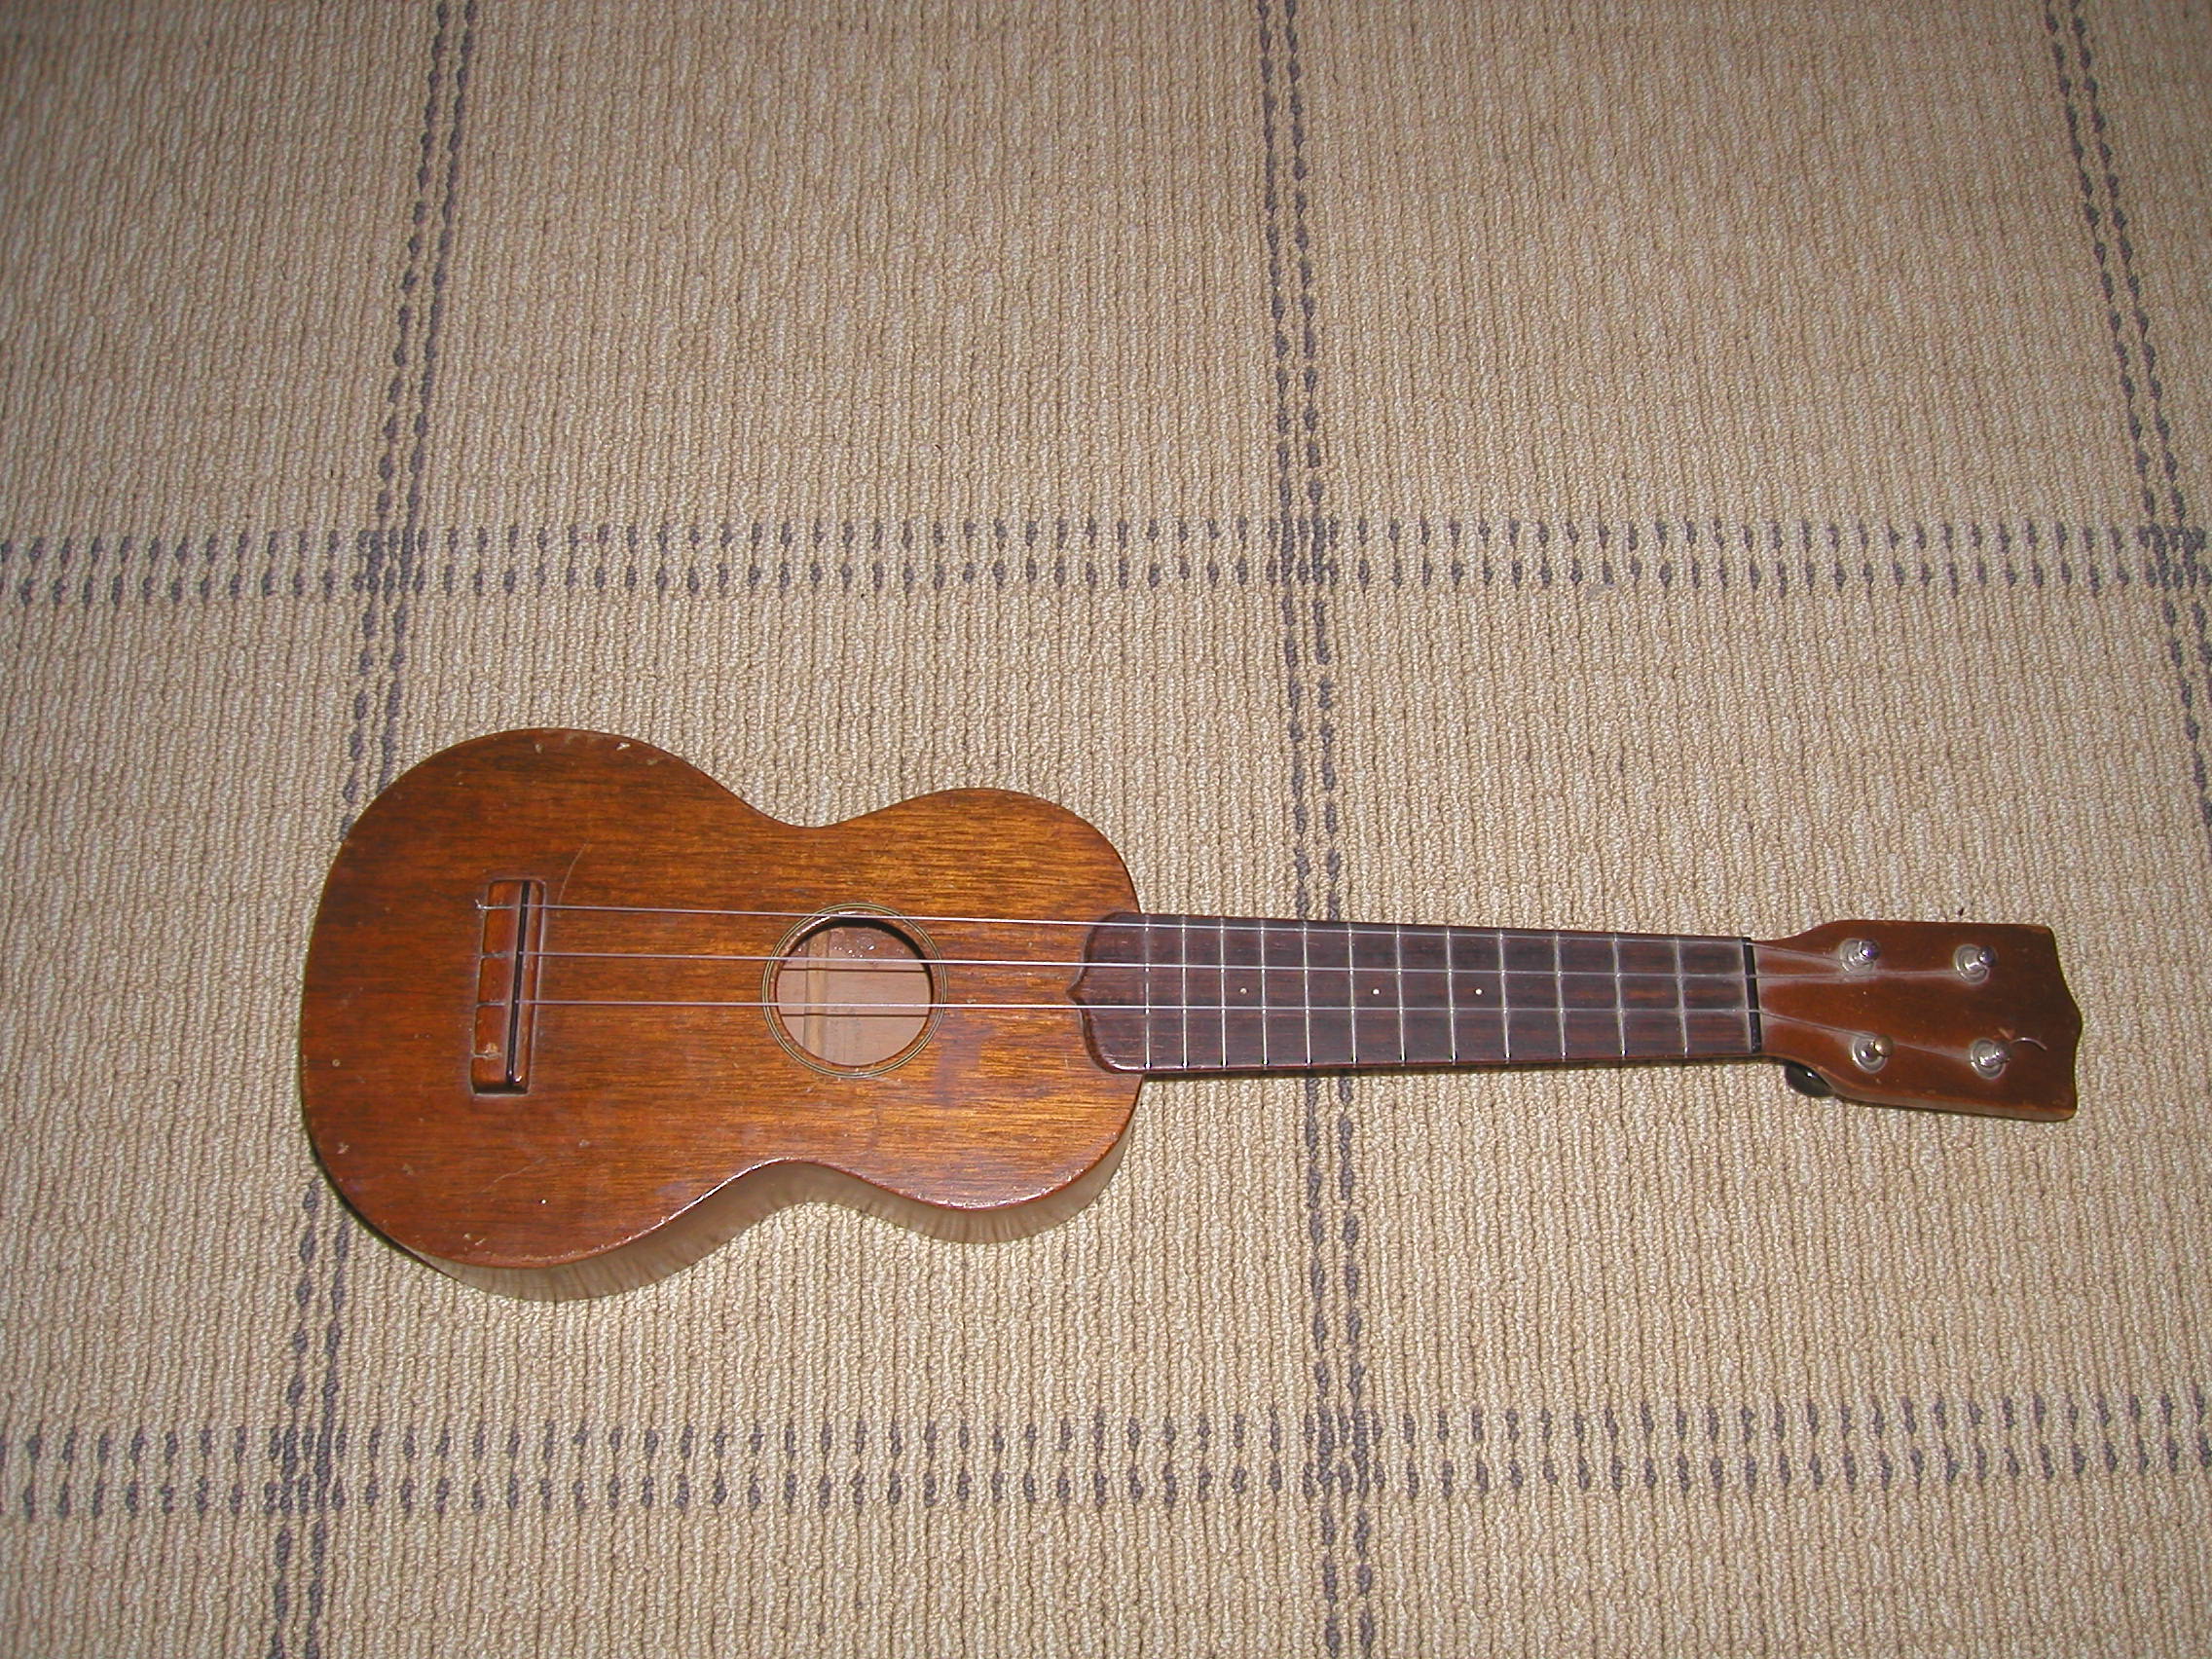 Dating vintage martin ukulele